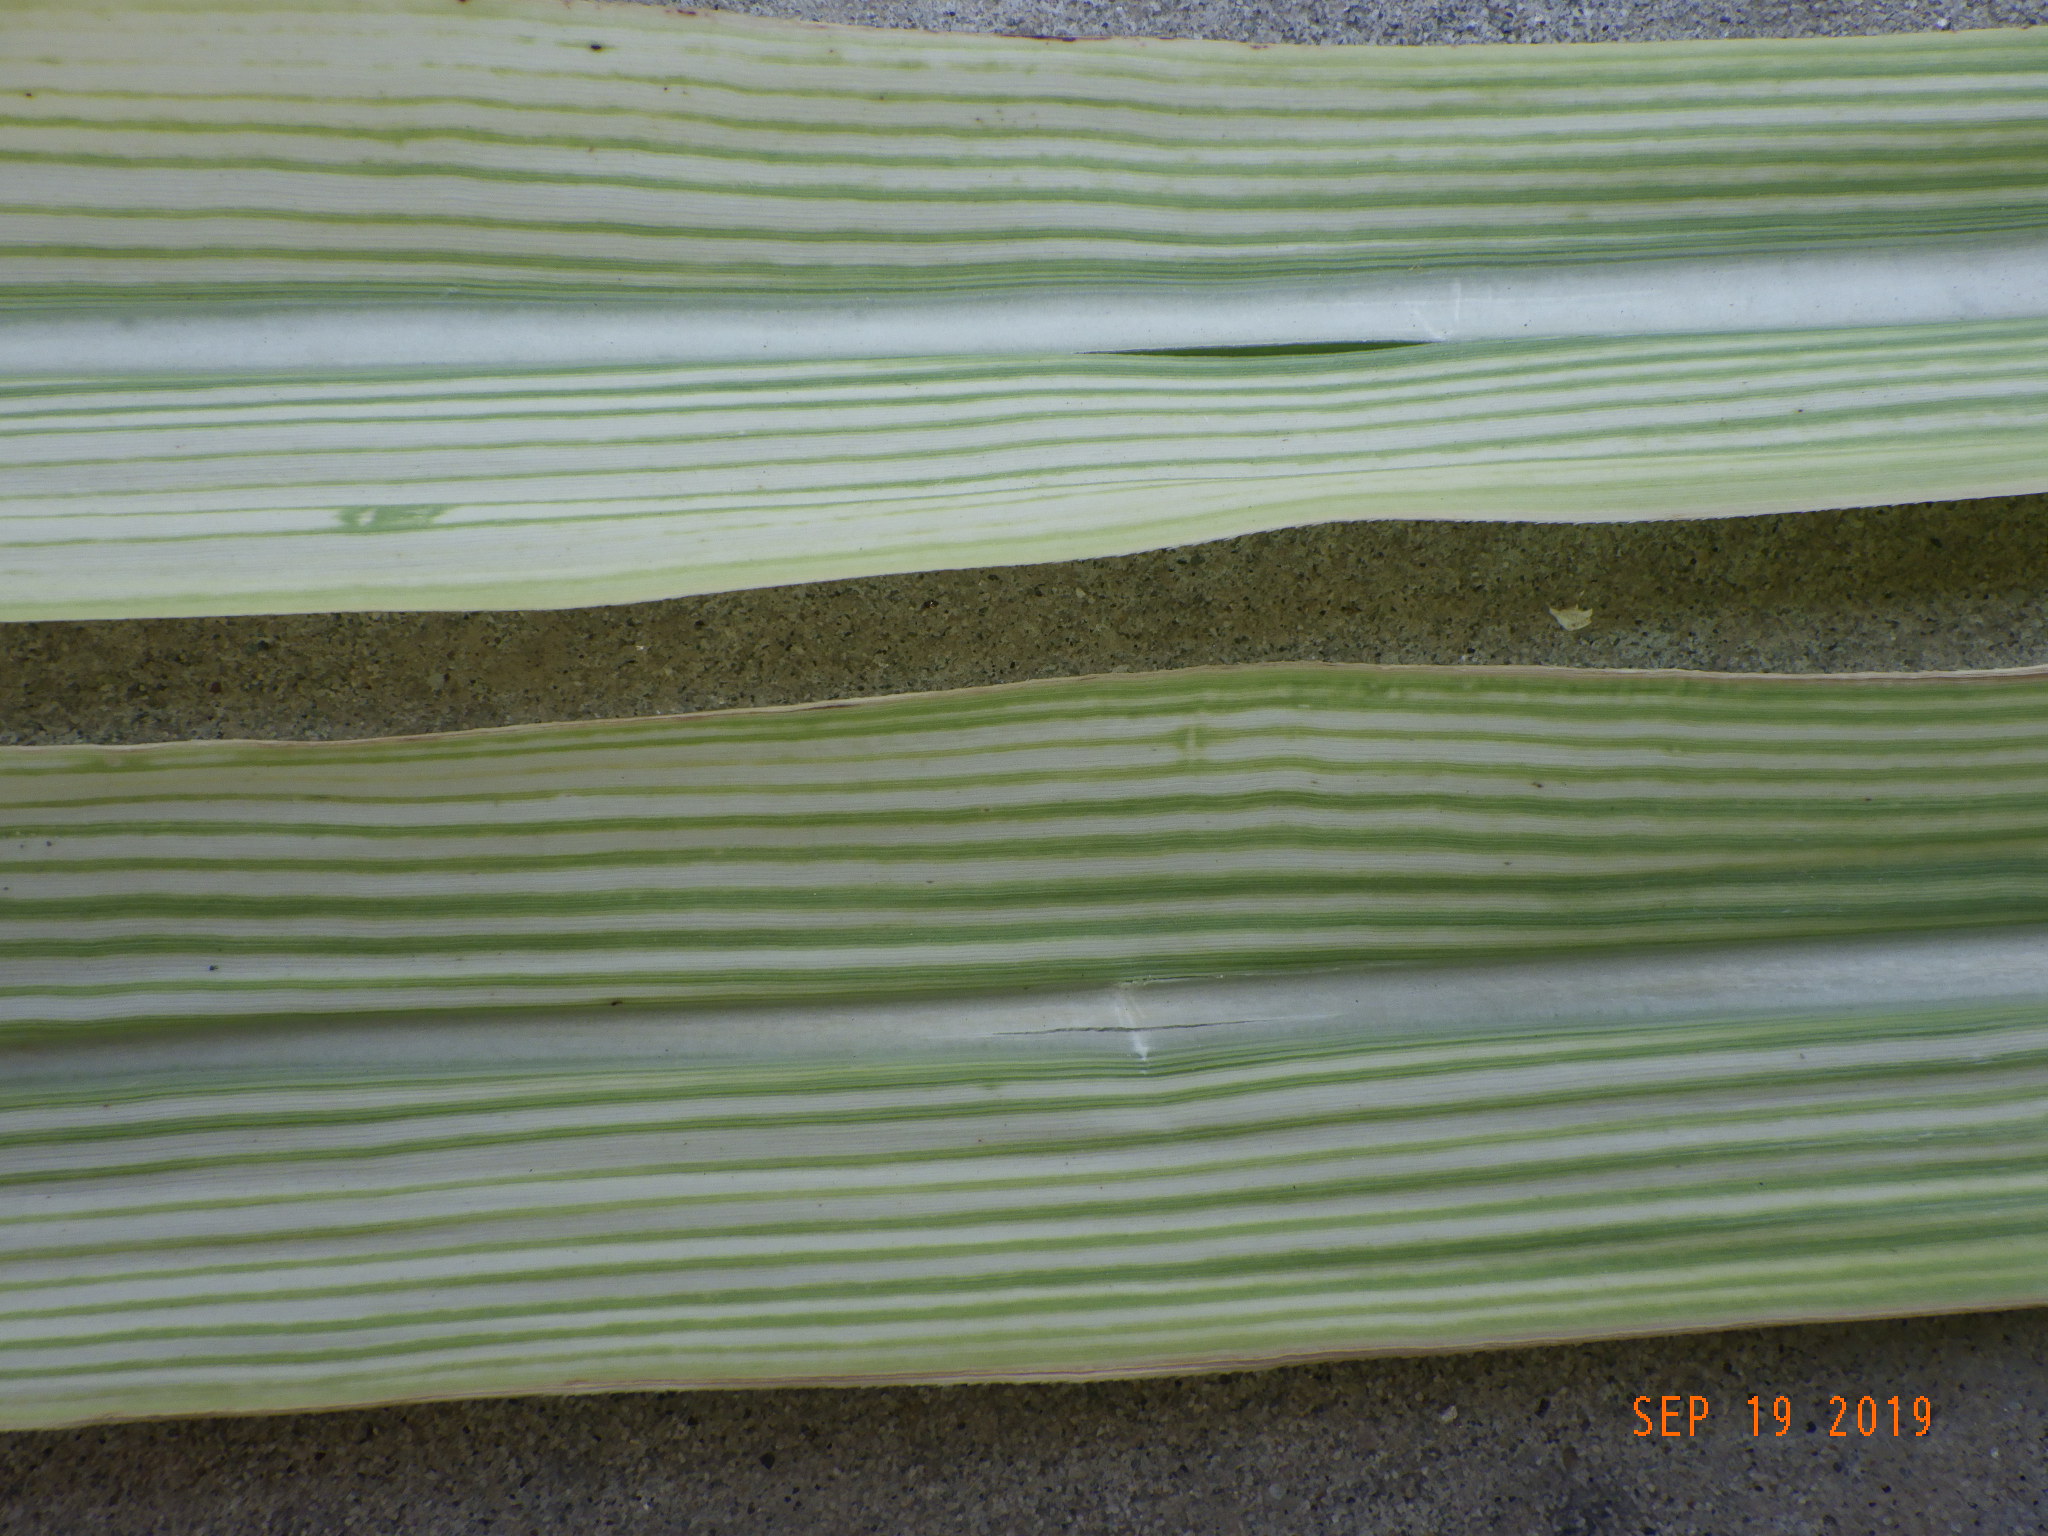 Zinc deficient Sugarcane leaves